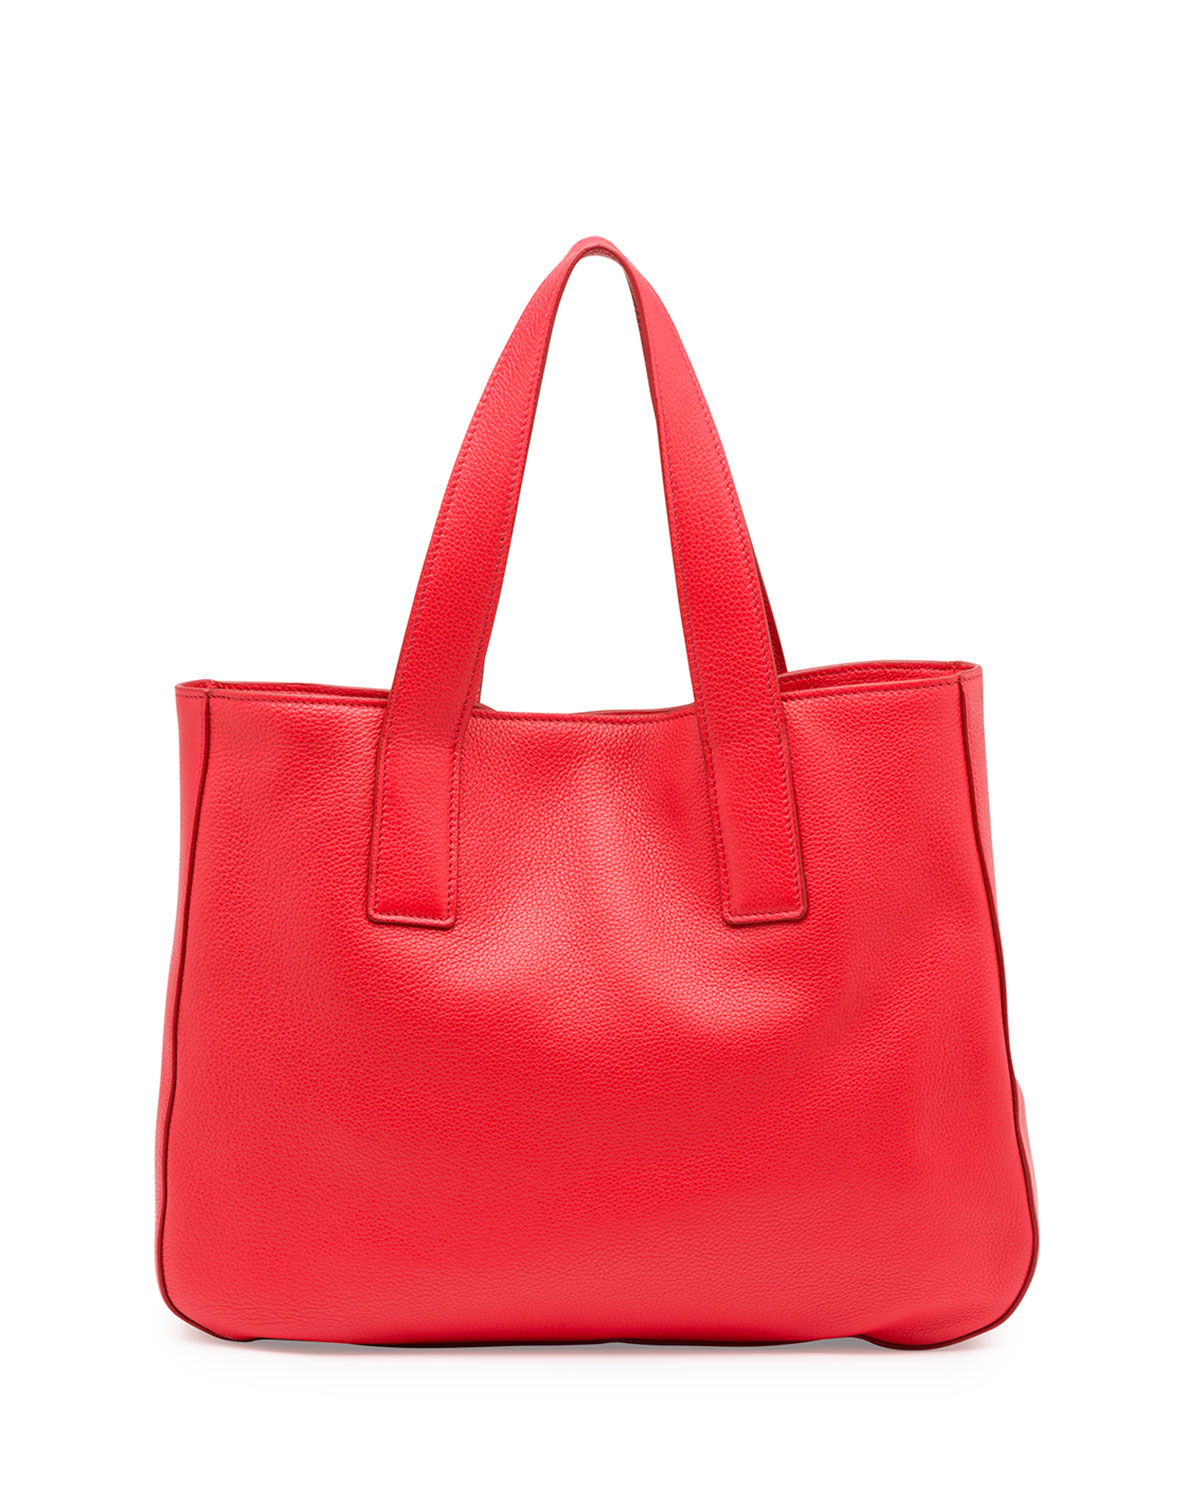 Prada Vitello Daino Leather Tote Bag in Red (LACCA) | Lyst